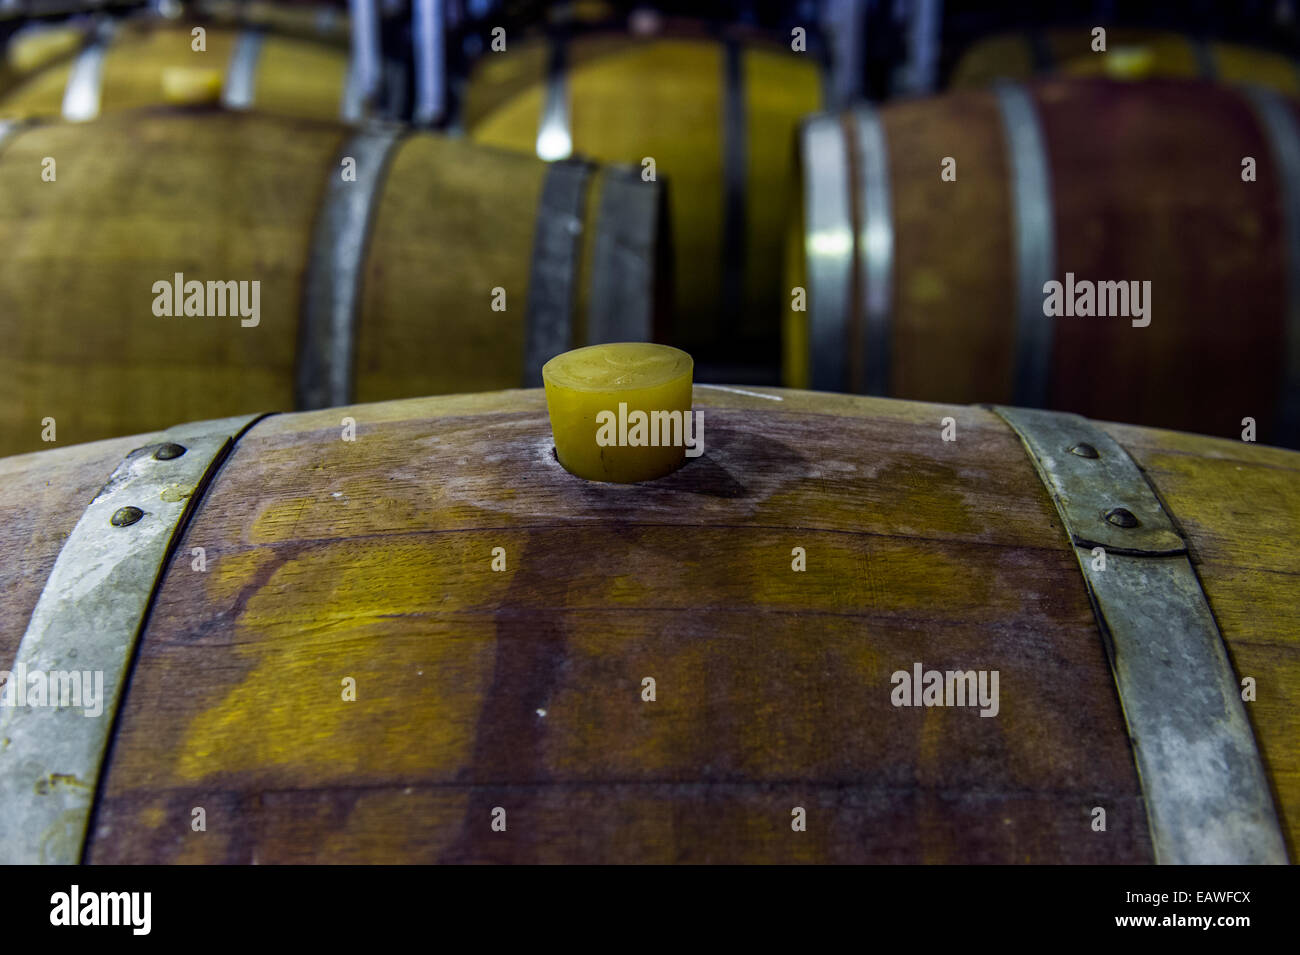 Une bonde en caoutchouc est utilisé pour sceller un tonneau de vin dans un vignoble. Banque D'Images